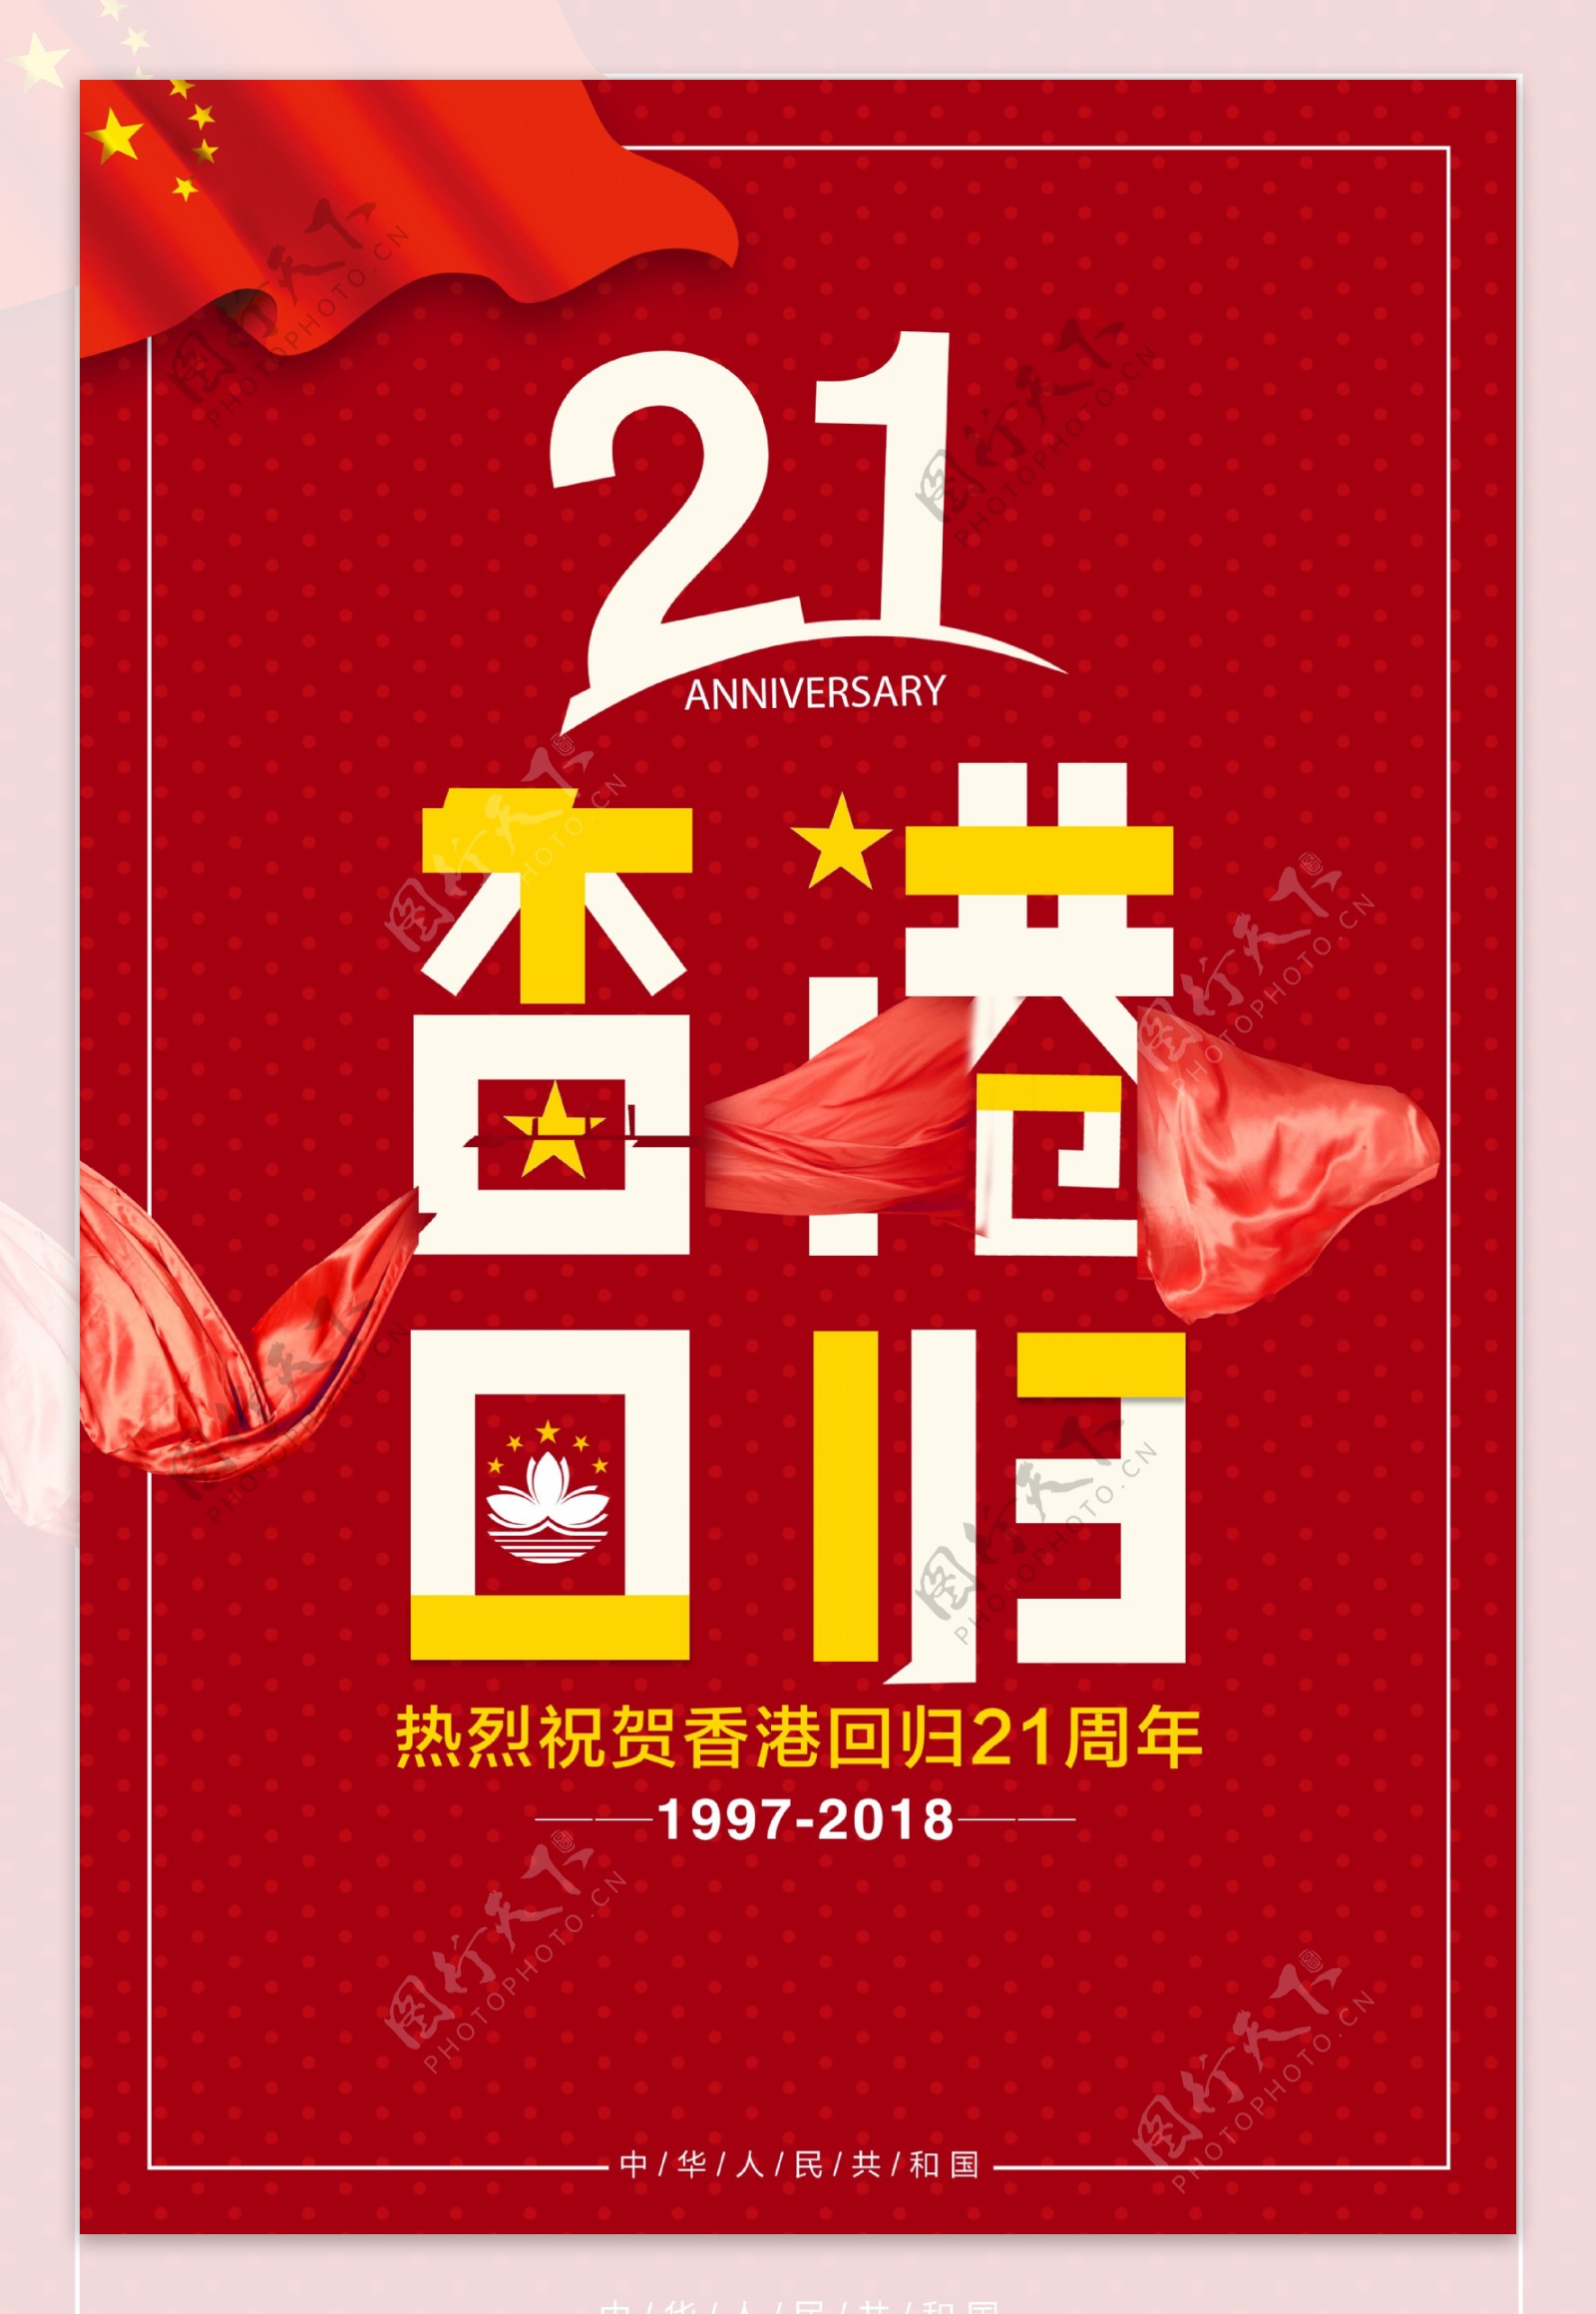 祝贺香港回归21周年海报